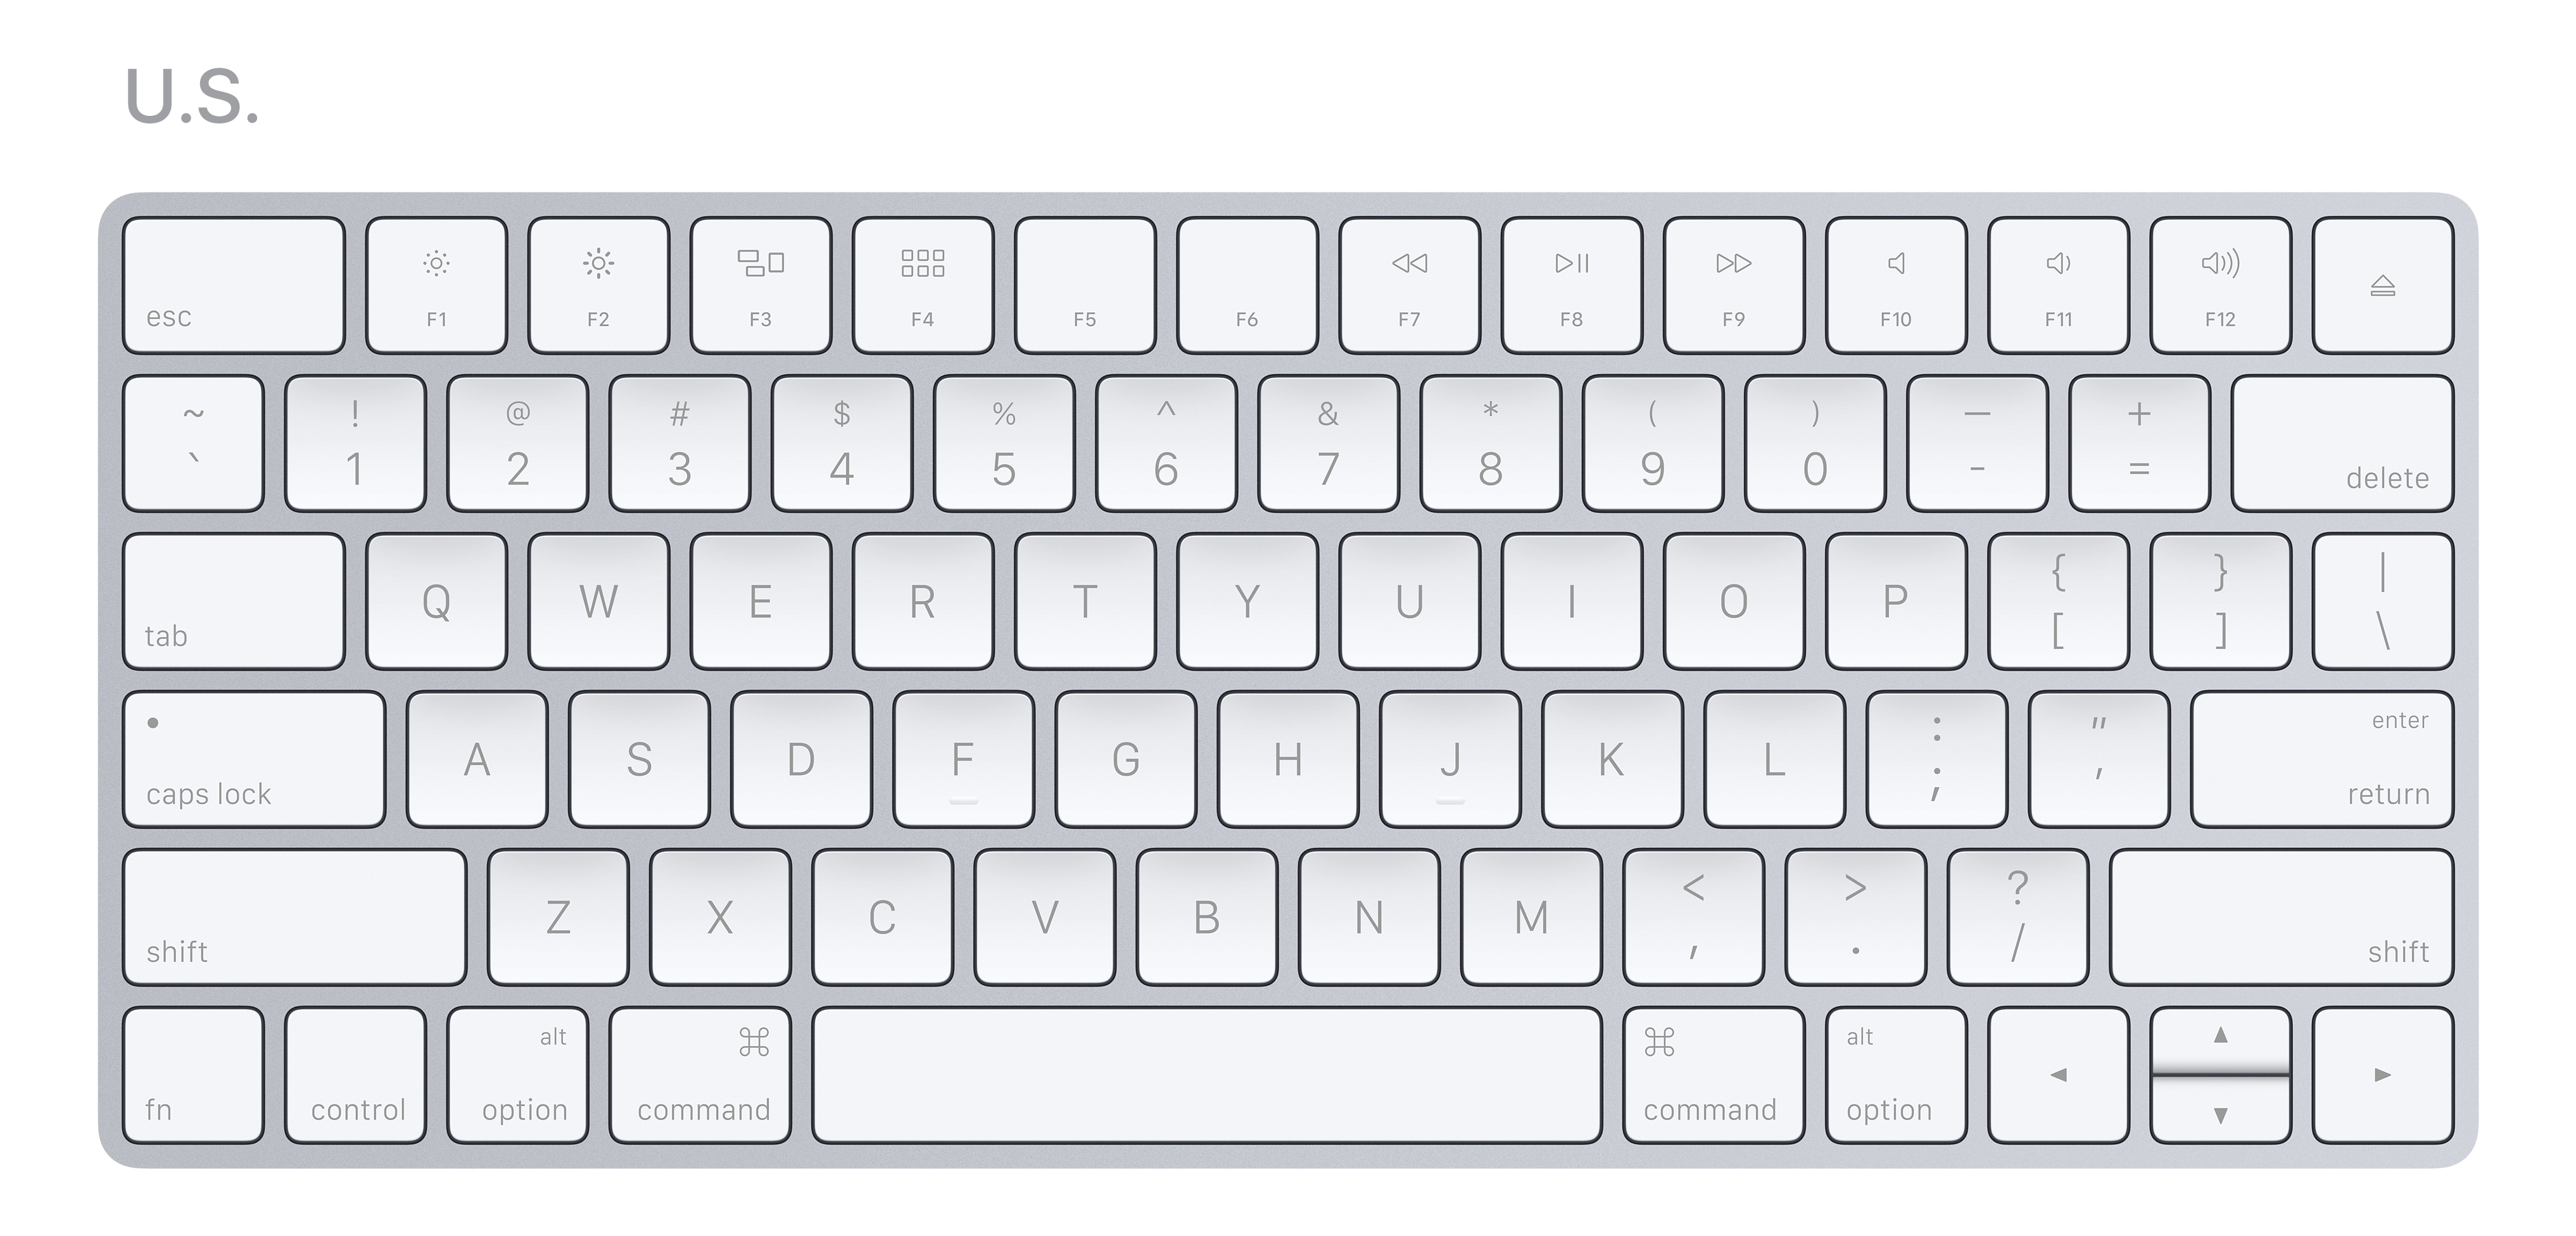 International keyboard layouts in 2017 - Marcin Wichary - Medium